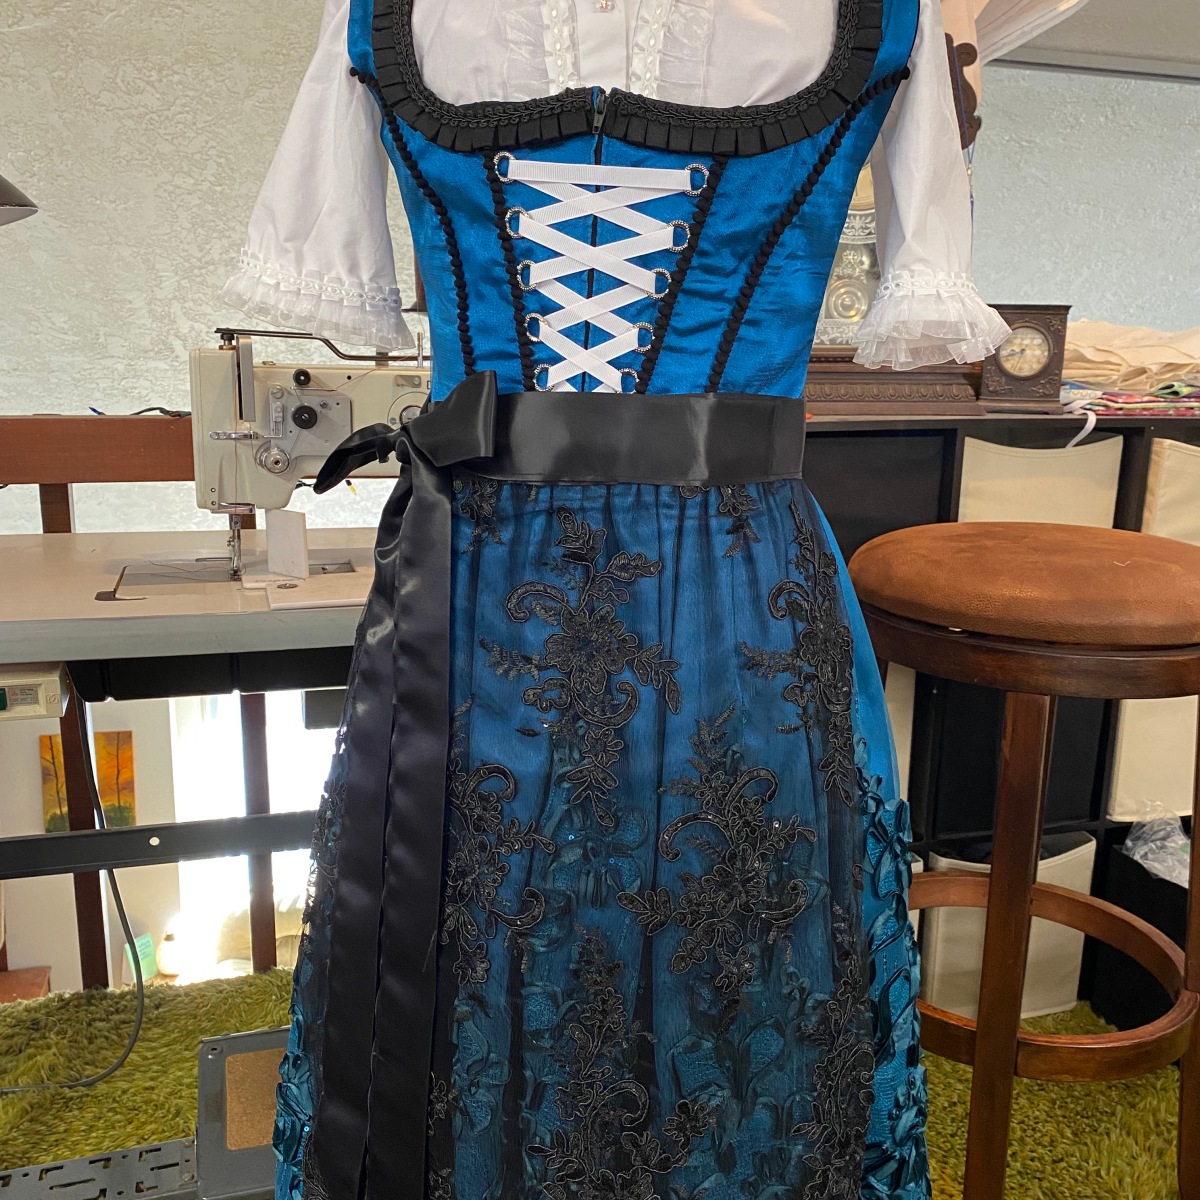 Bavarian Dress